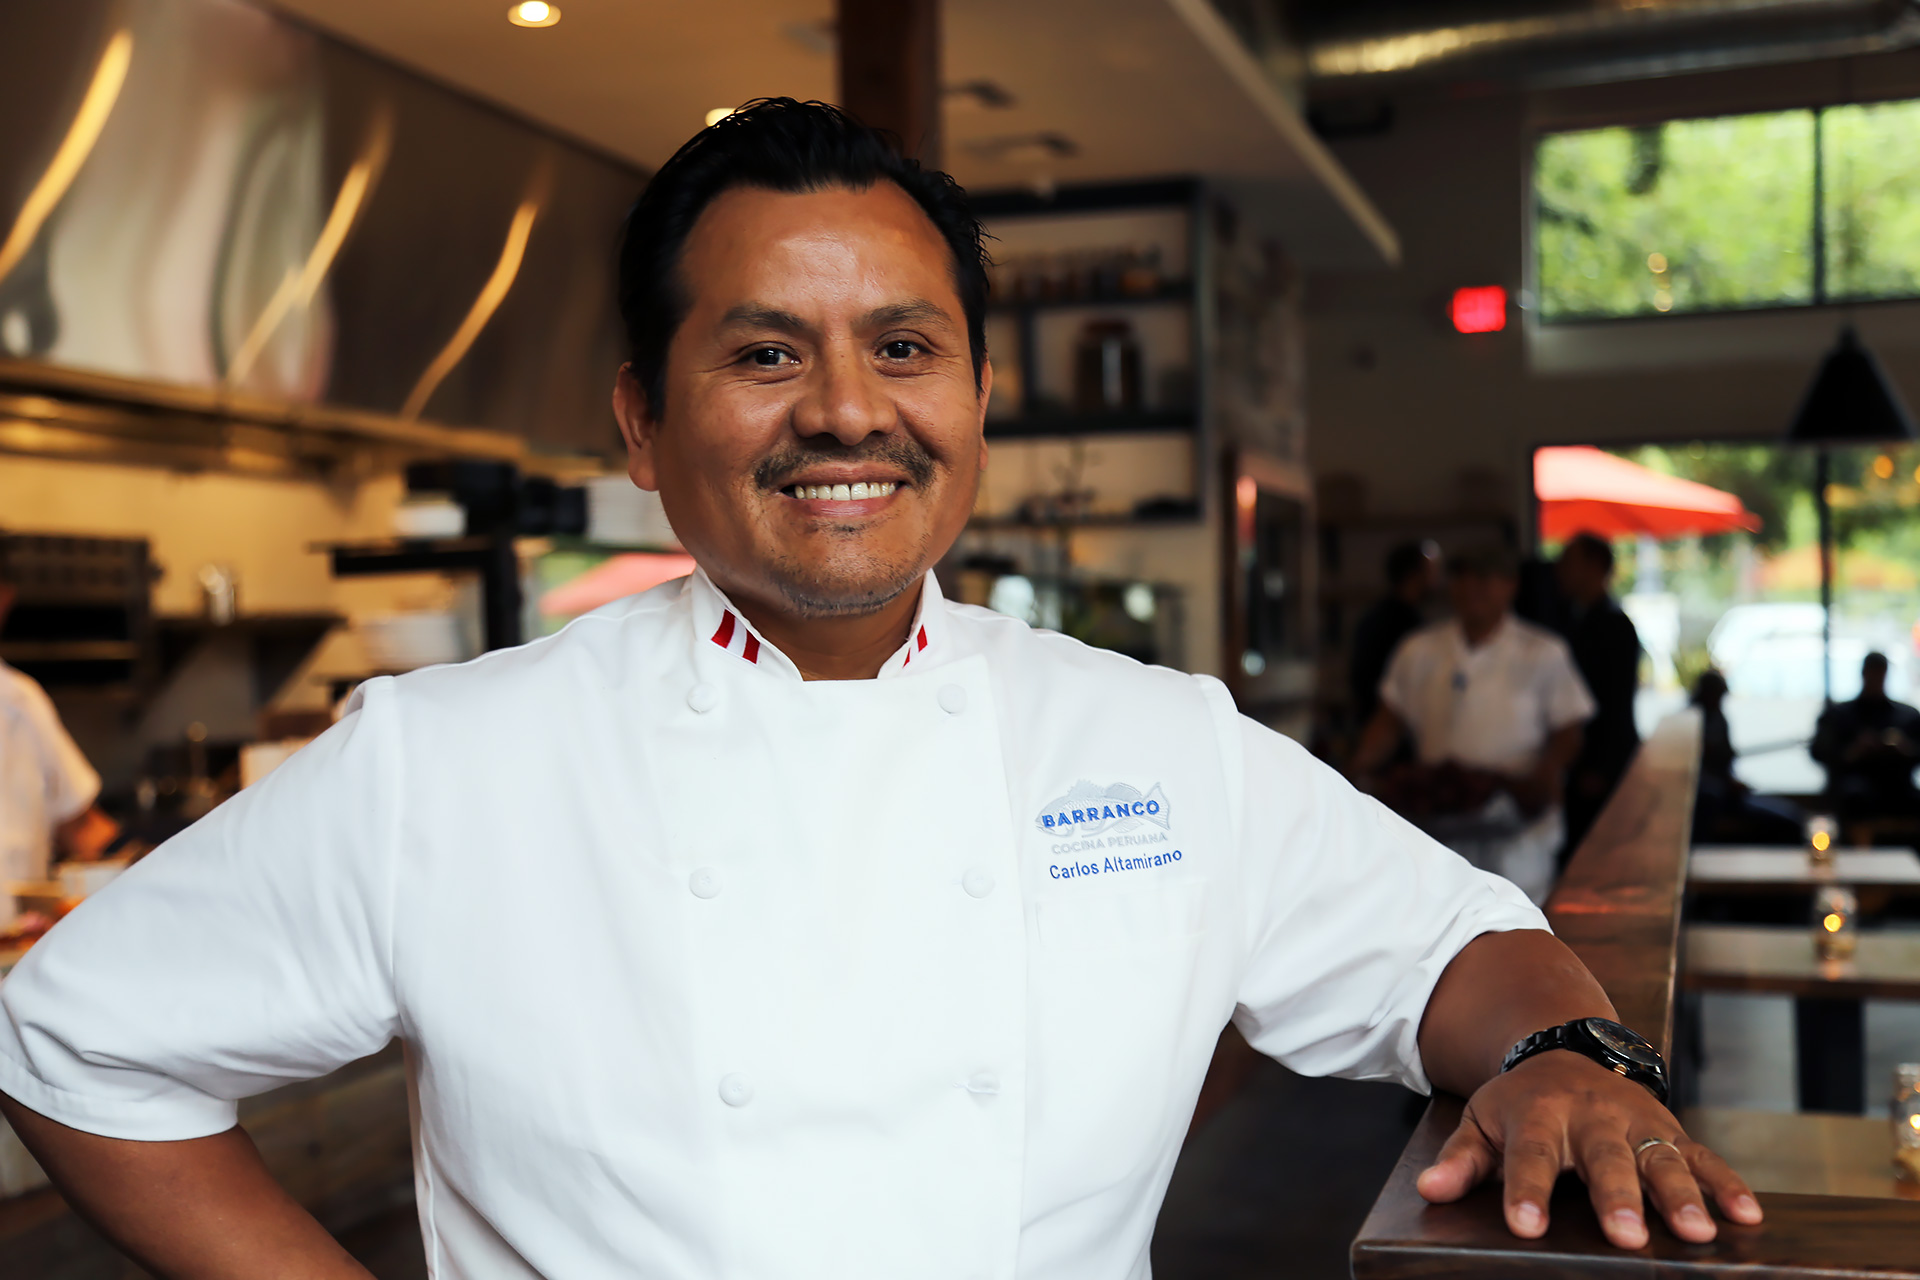 Barranco Chef/Owner Carlos Altamirano